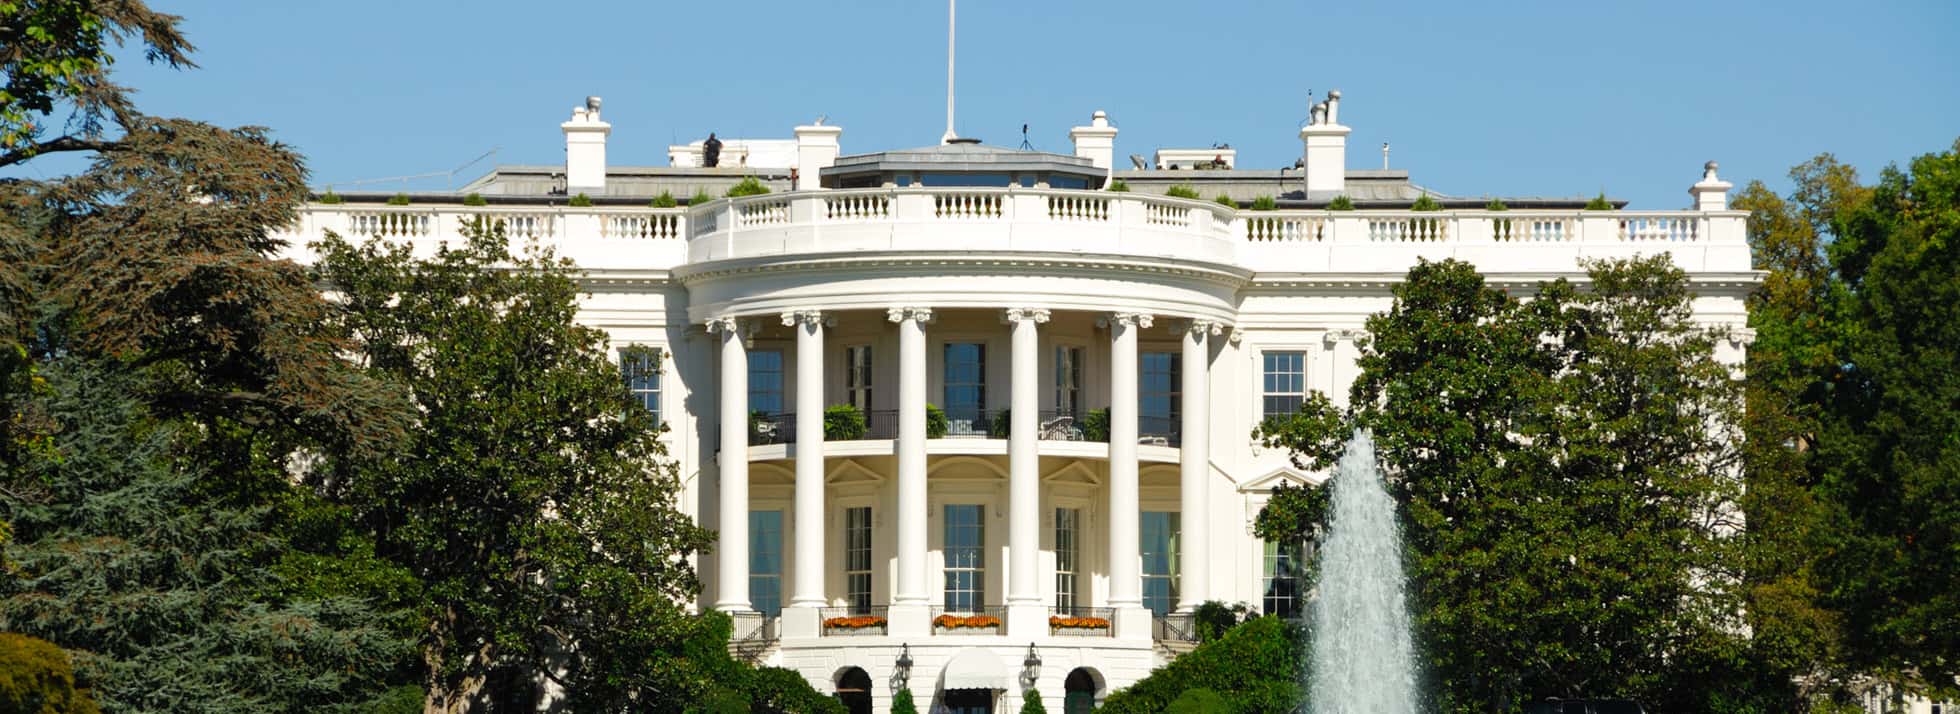 White House 1 